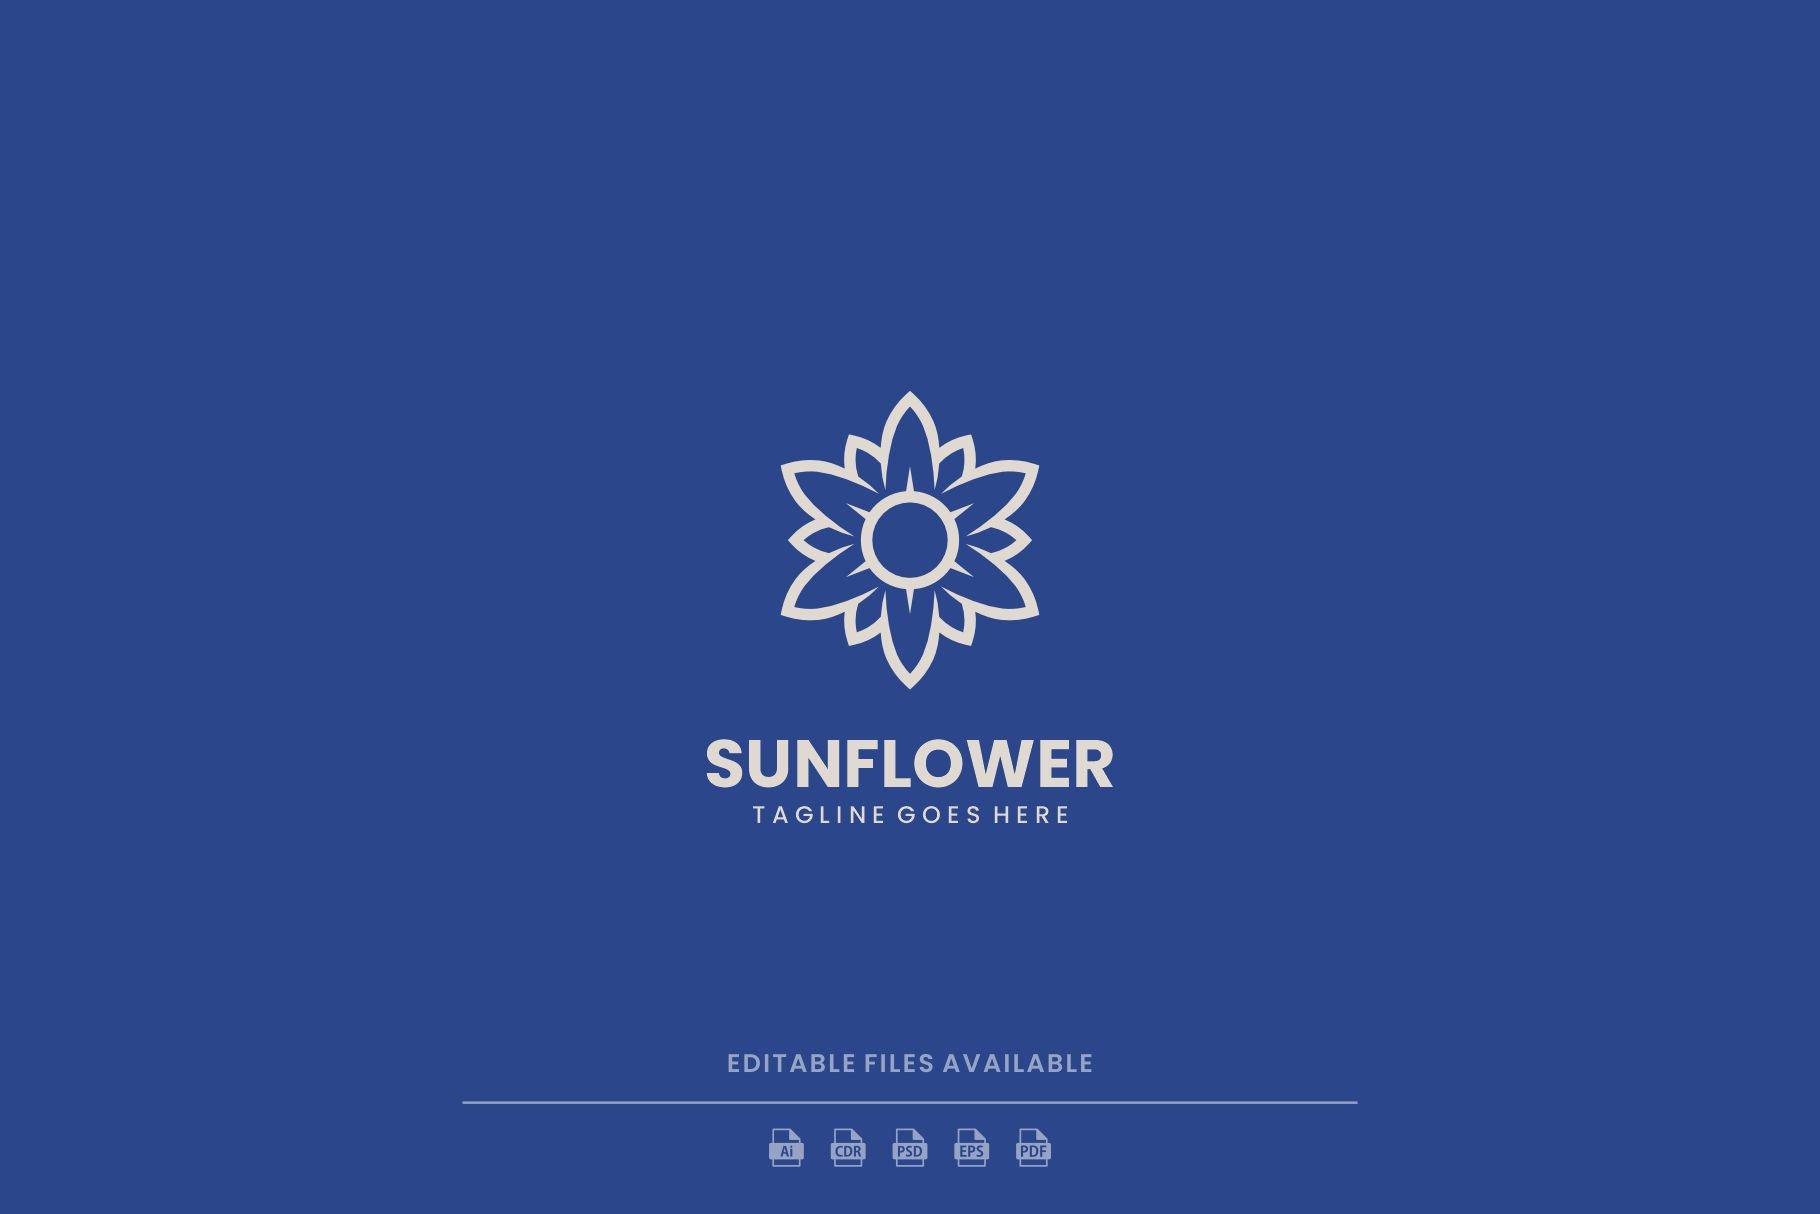 Sunflower Line Art Logo cover image.